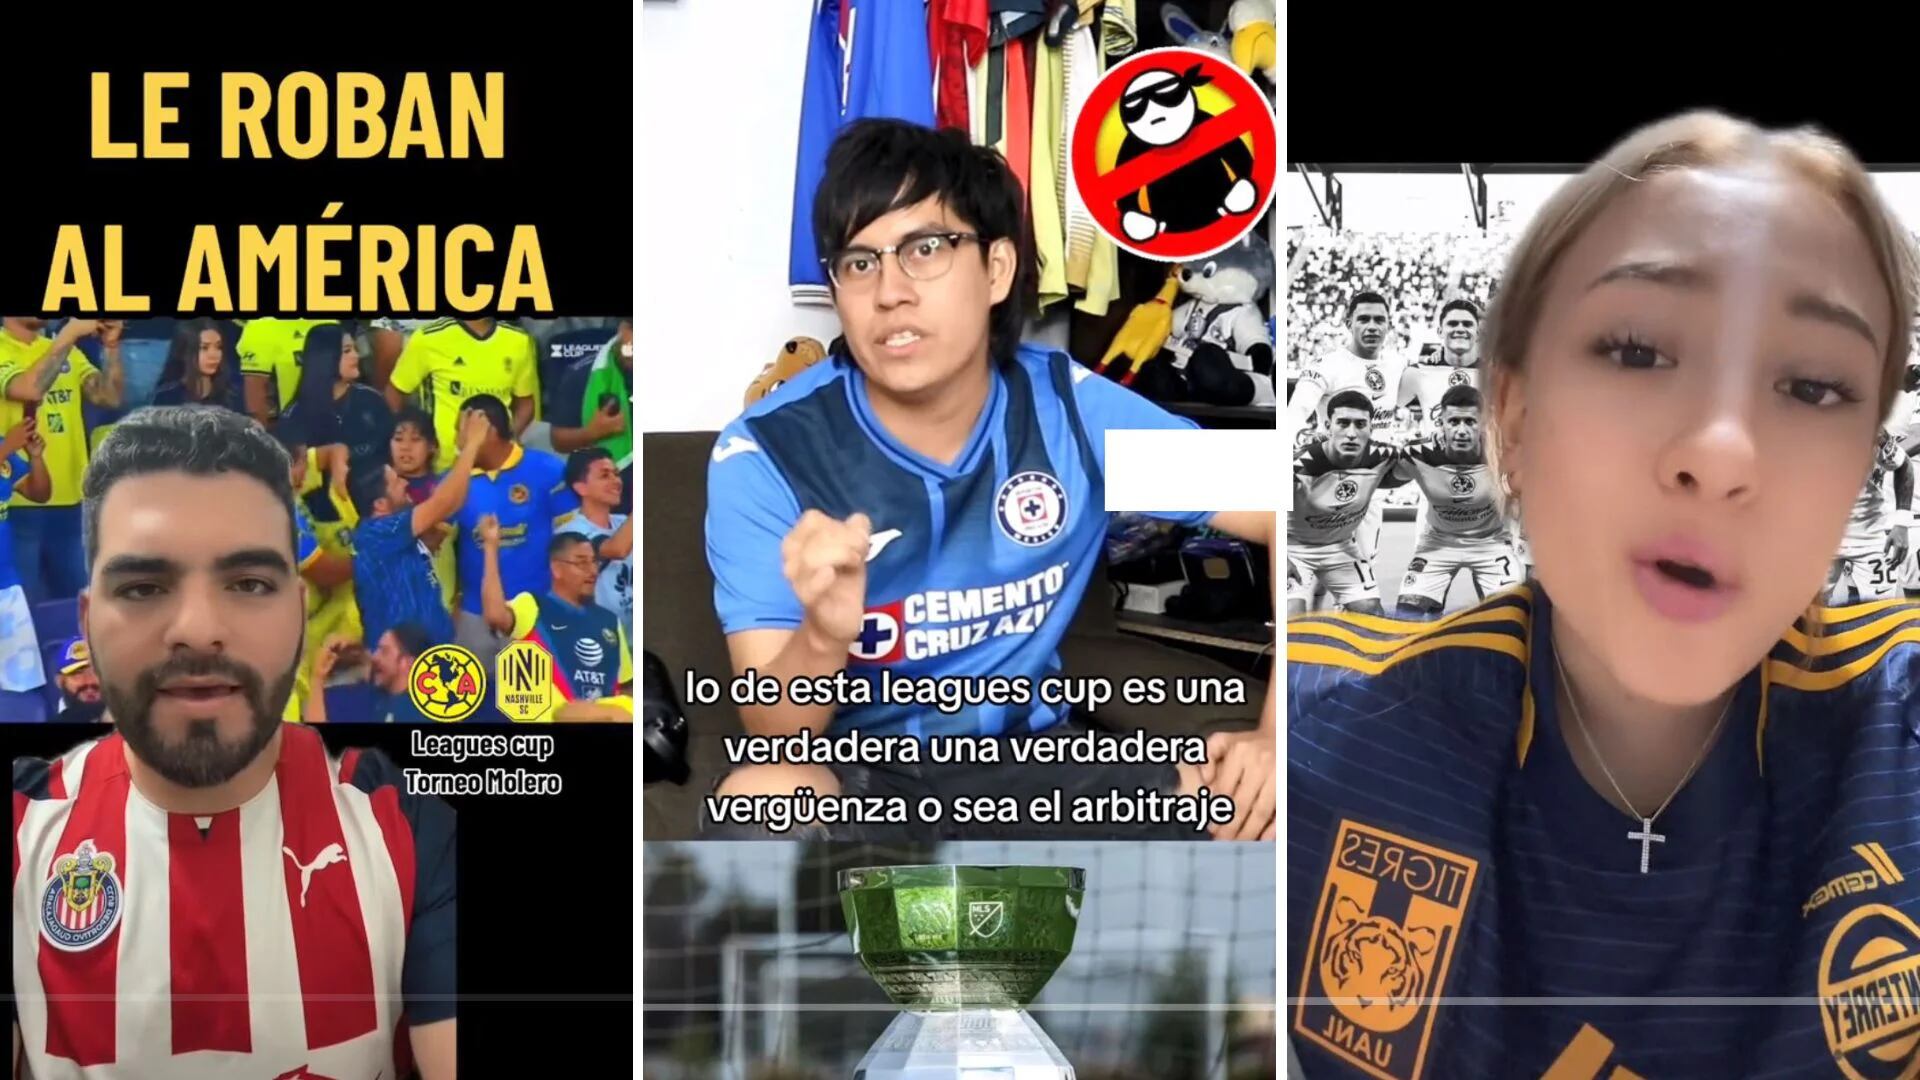 “Una vergüenza”: aficionados de Chivas, Cruz Azul y Tigres arremeten contra la Leagues Cup por robo al América